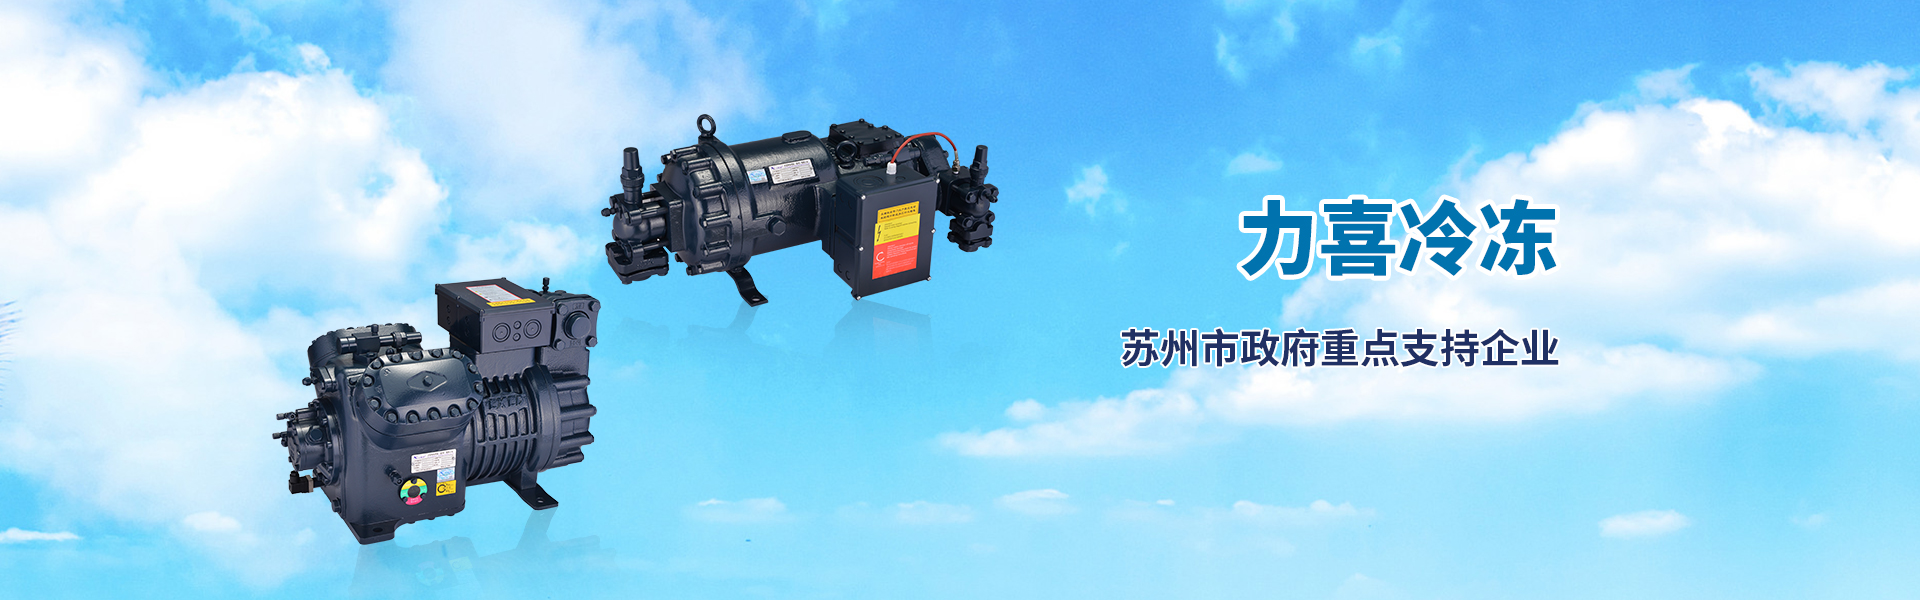 bwin·必赢(中国)唯一官方网站_产品8593